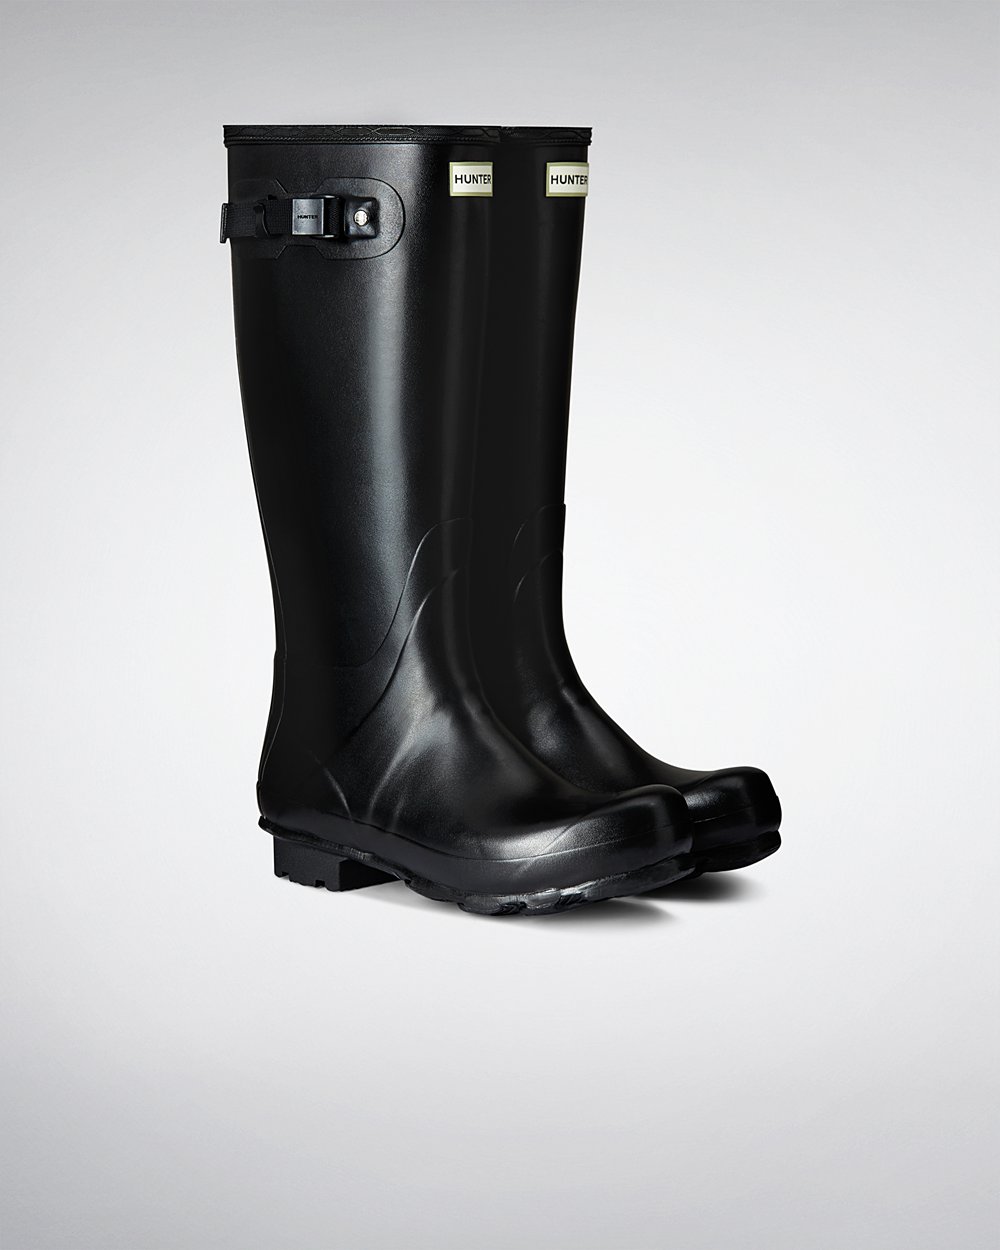 Mens Tall Rain Boots - Hunter Norris Field (21BQDZOTL) - Black